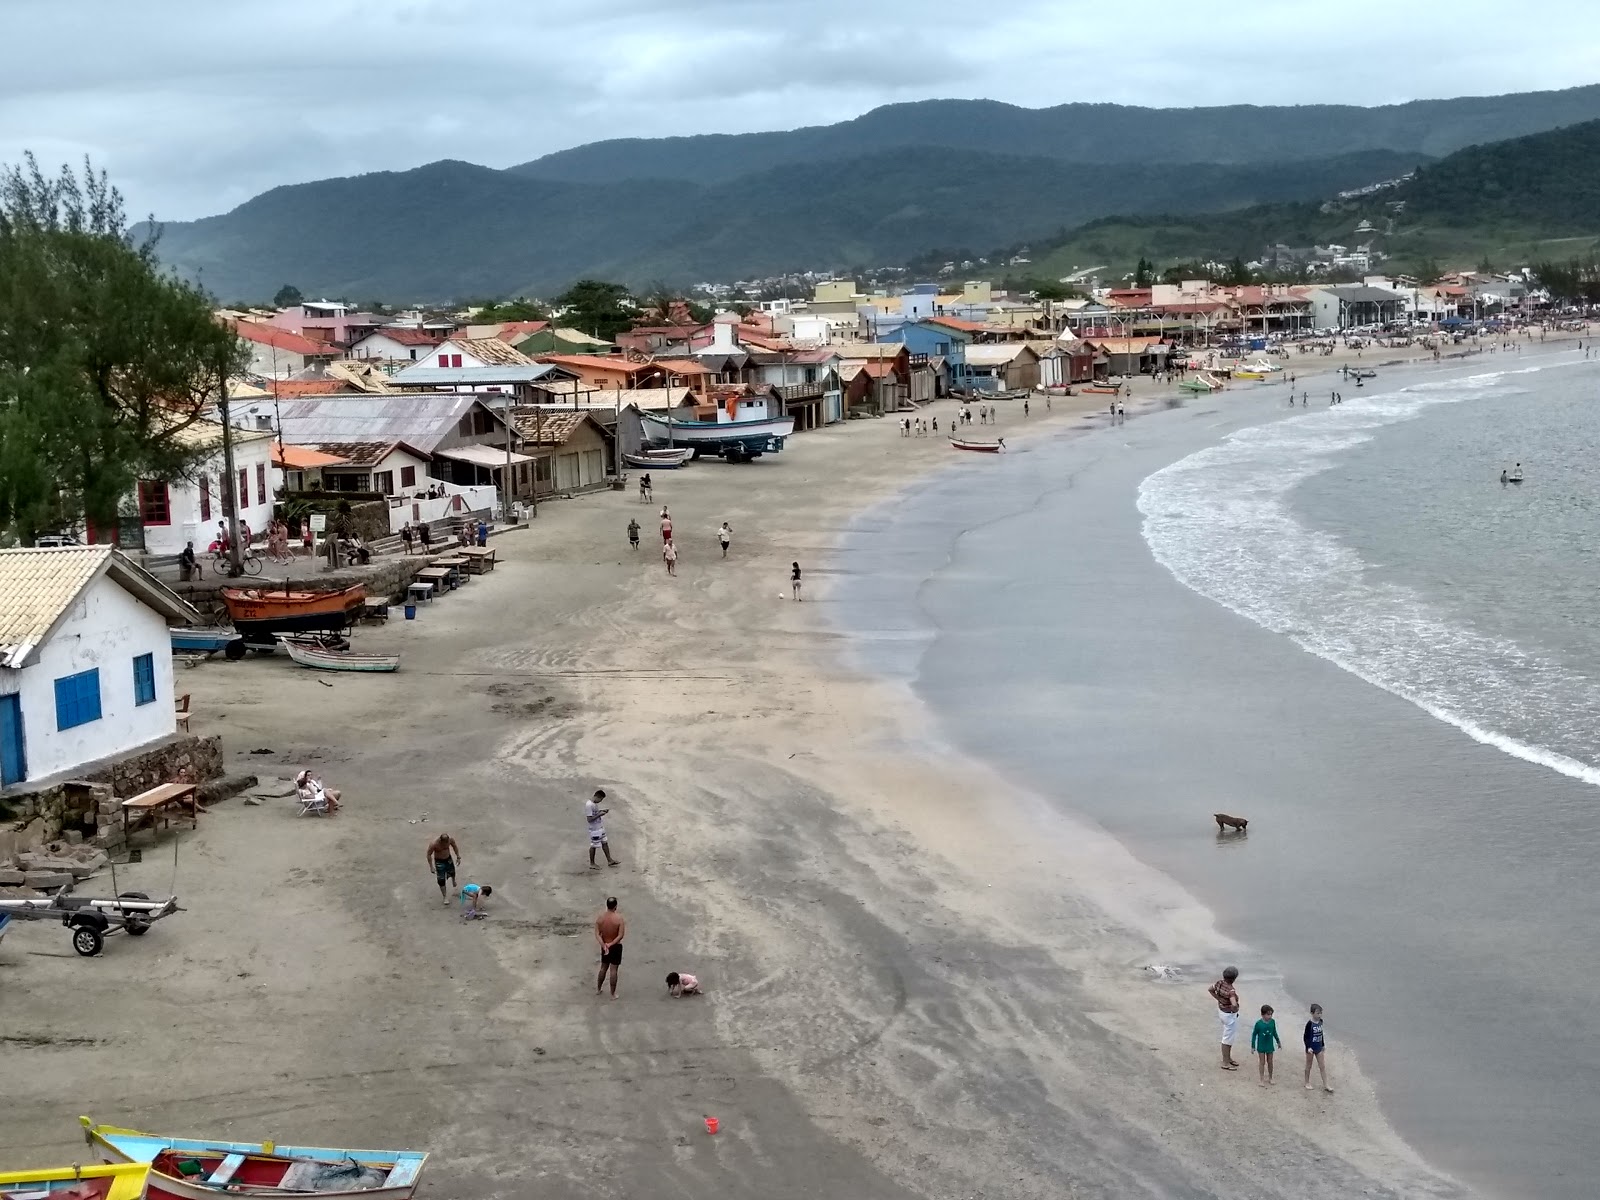 Praia de Garopaba'in fotoğrafı - rahatlamayı sevenler arasında popüler bir yer